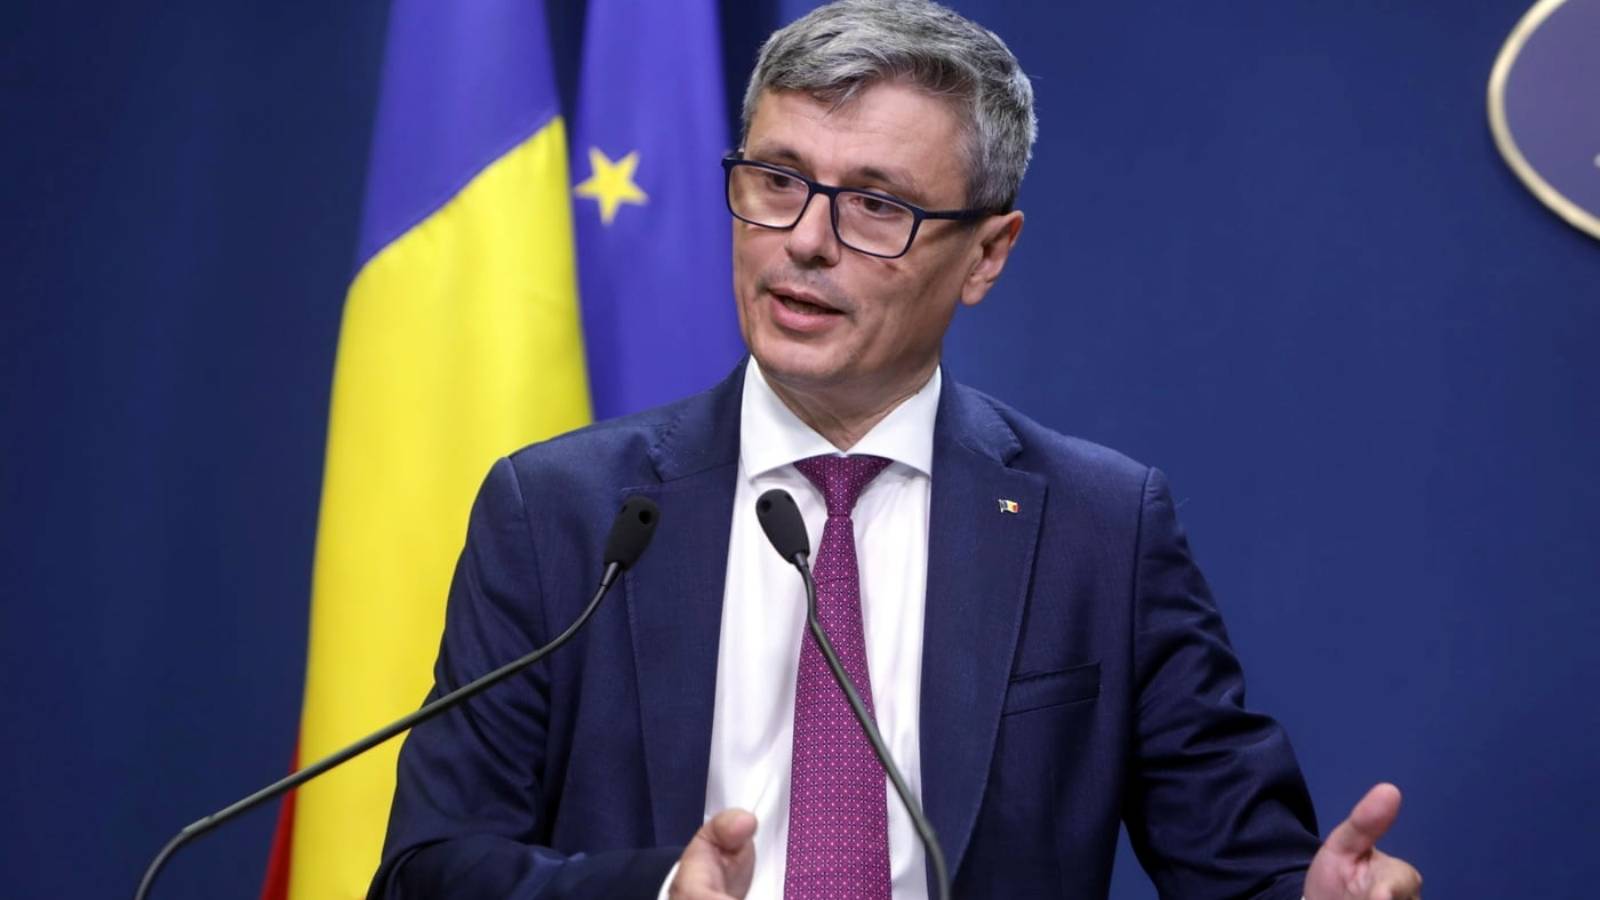 Energiminister Senaste lag antog viktiga åtgärder Rumänien